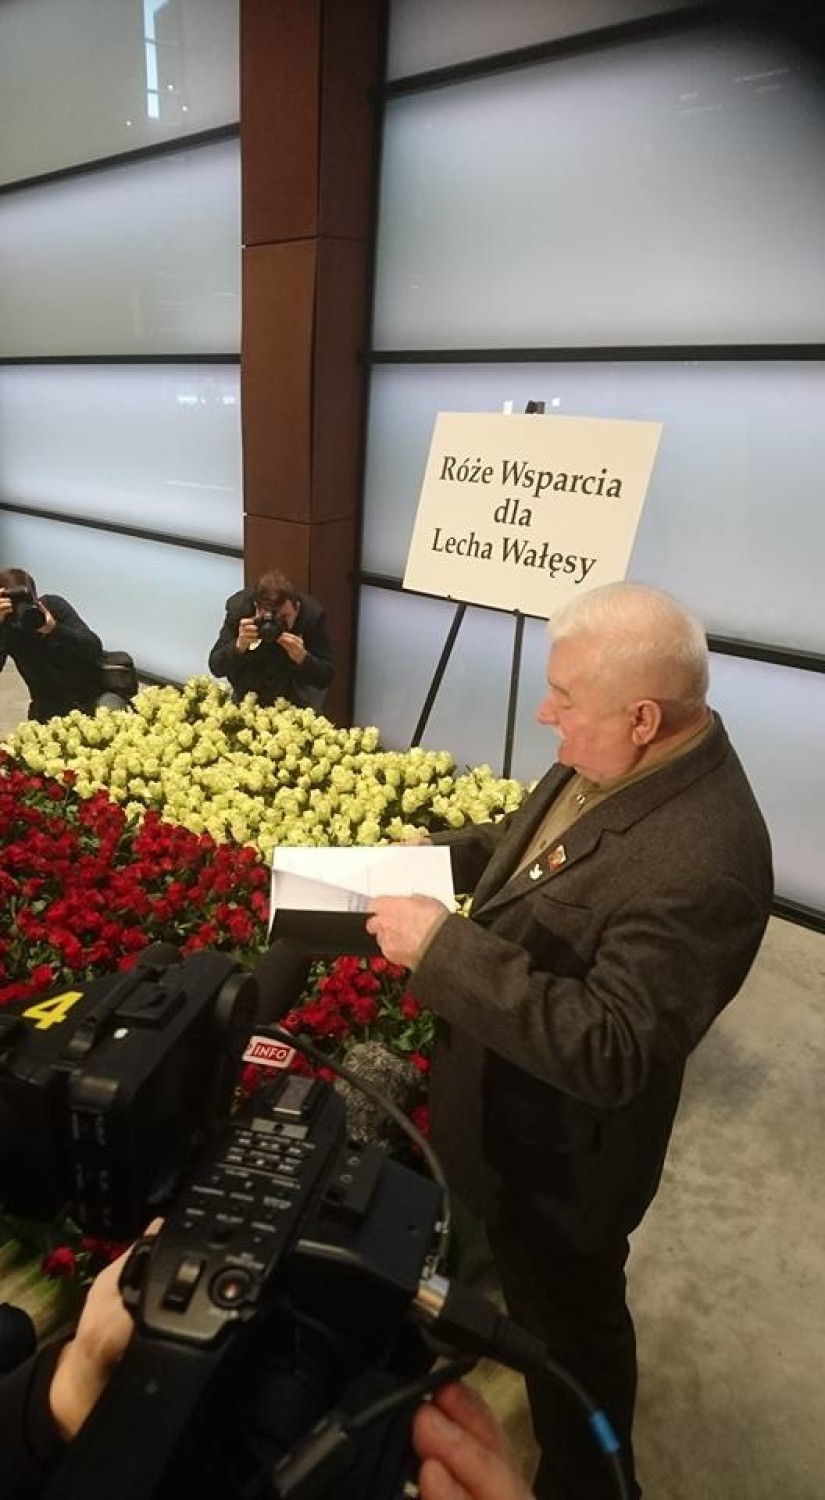 Róże dla Lecha Wałęsy od internautów [ZDJĘCIA]